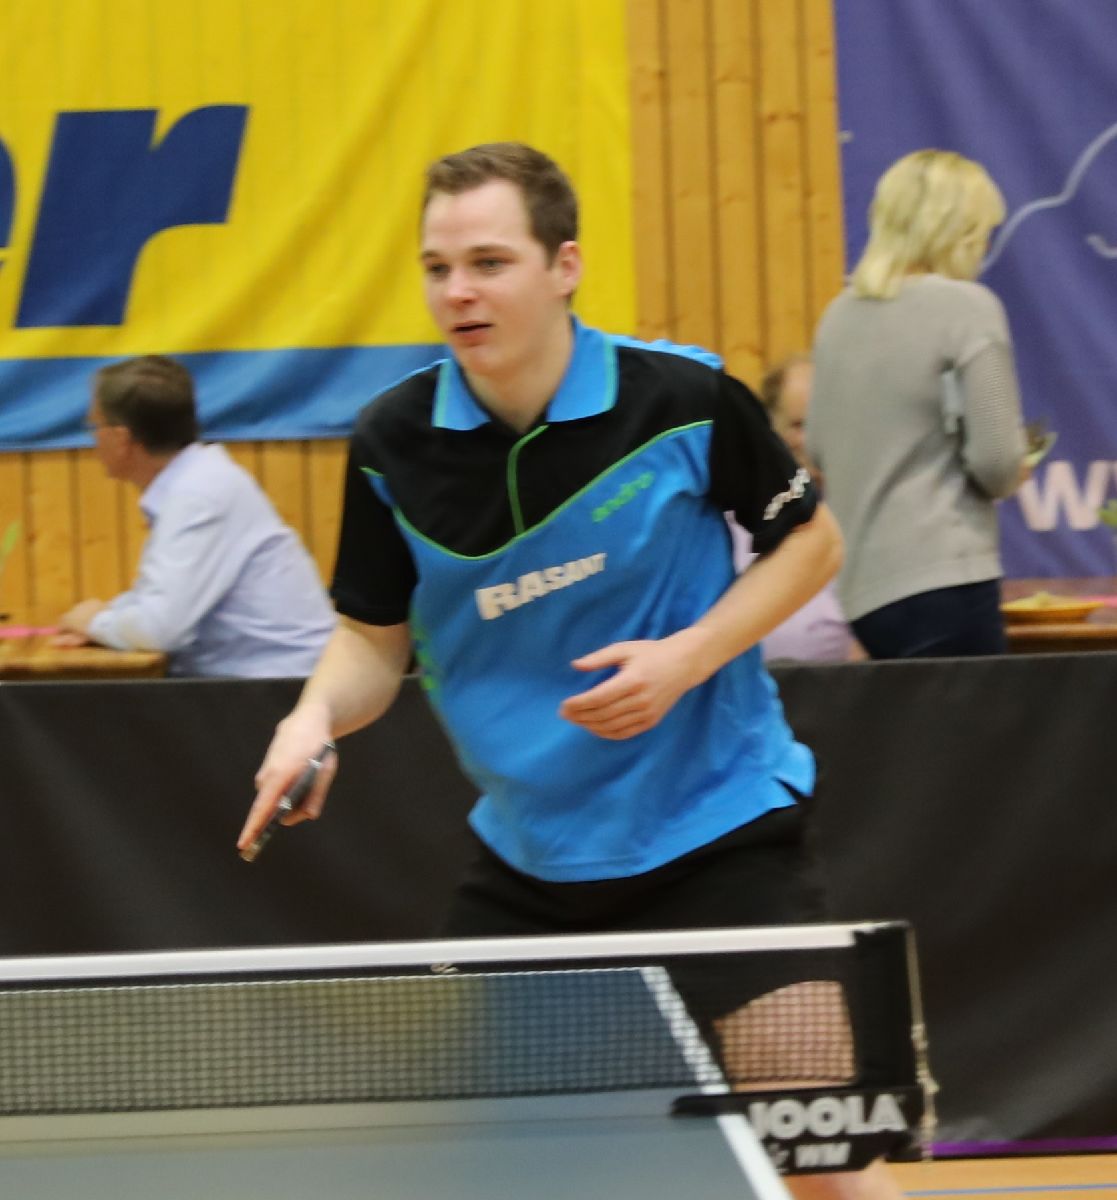 Klaidas Baranauskas gewinnt das Landesranglistenqualifikationturnier der Herren in Freyburg / Pia Gottschalk auf Platz 6